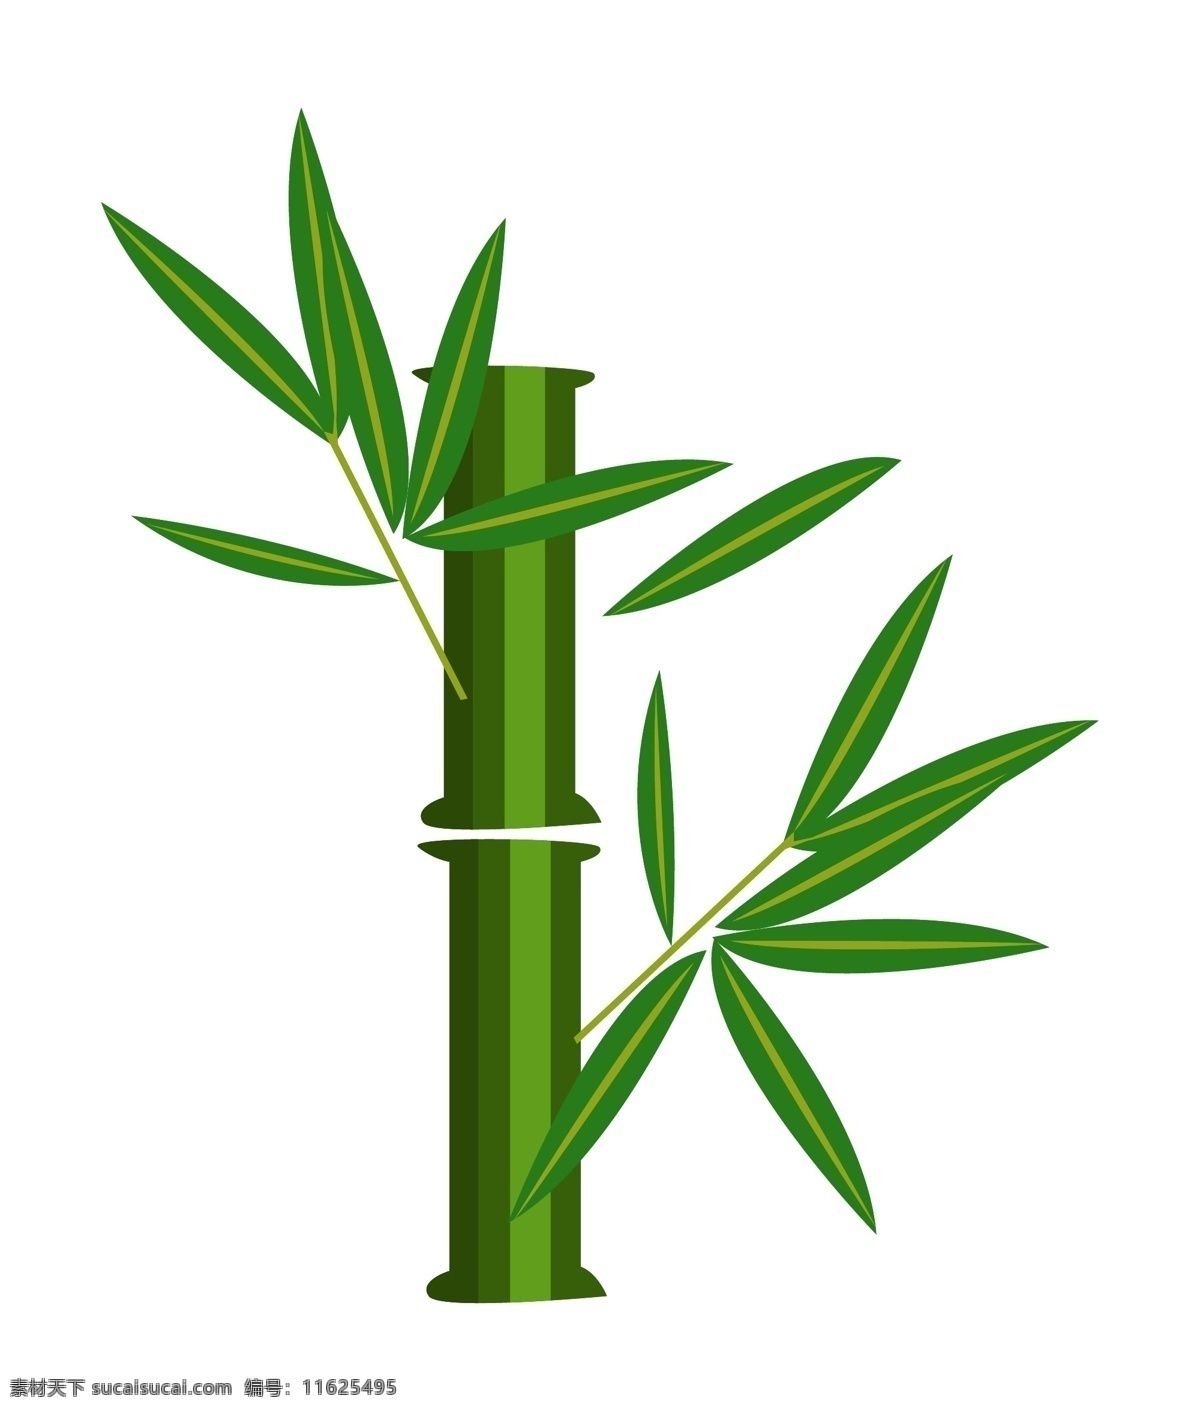 笔直 绿色 竹子 插画 绿色的竹子 卡通插画 竹子插画 竹叶插画 文征明竹子 四君子 绿色的竹竿